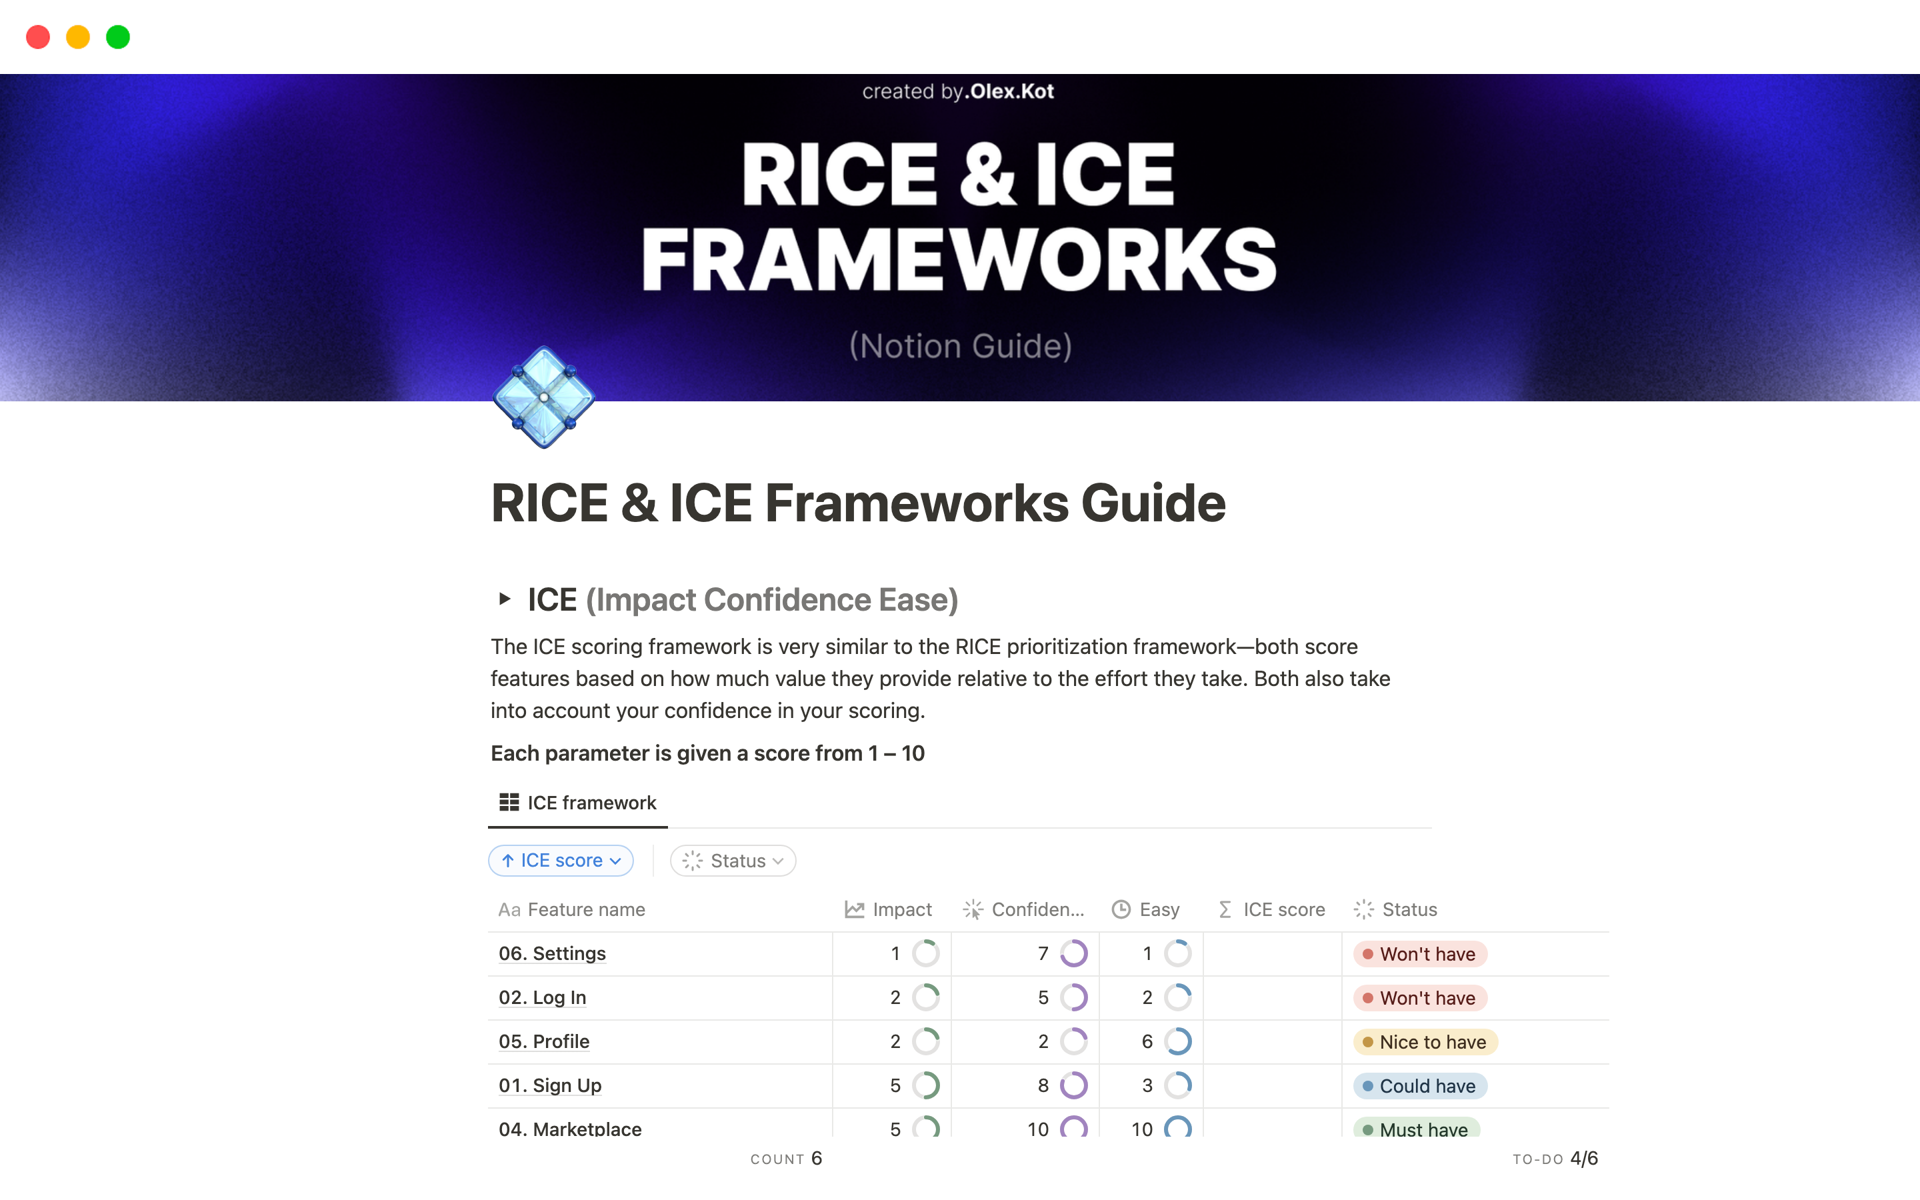 RICE & ICE Frameworks Guide 님의 템플릿 미리보기